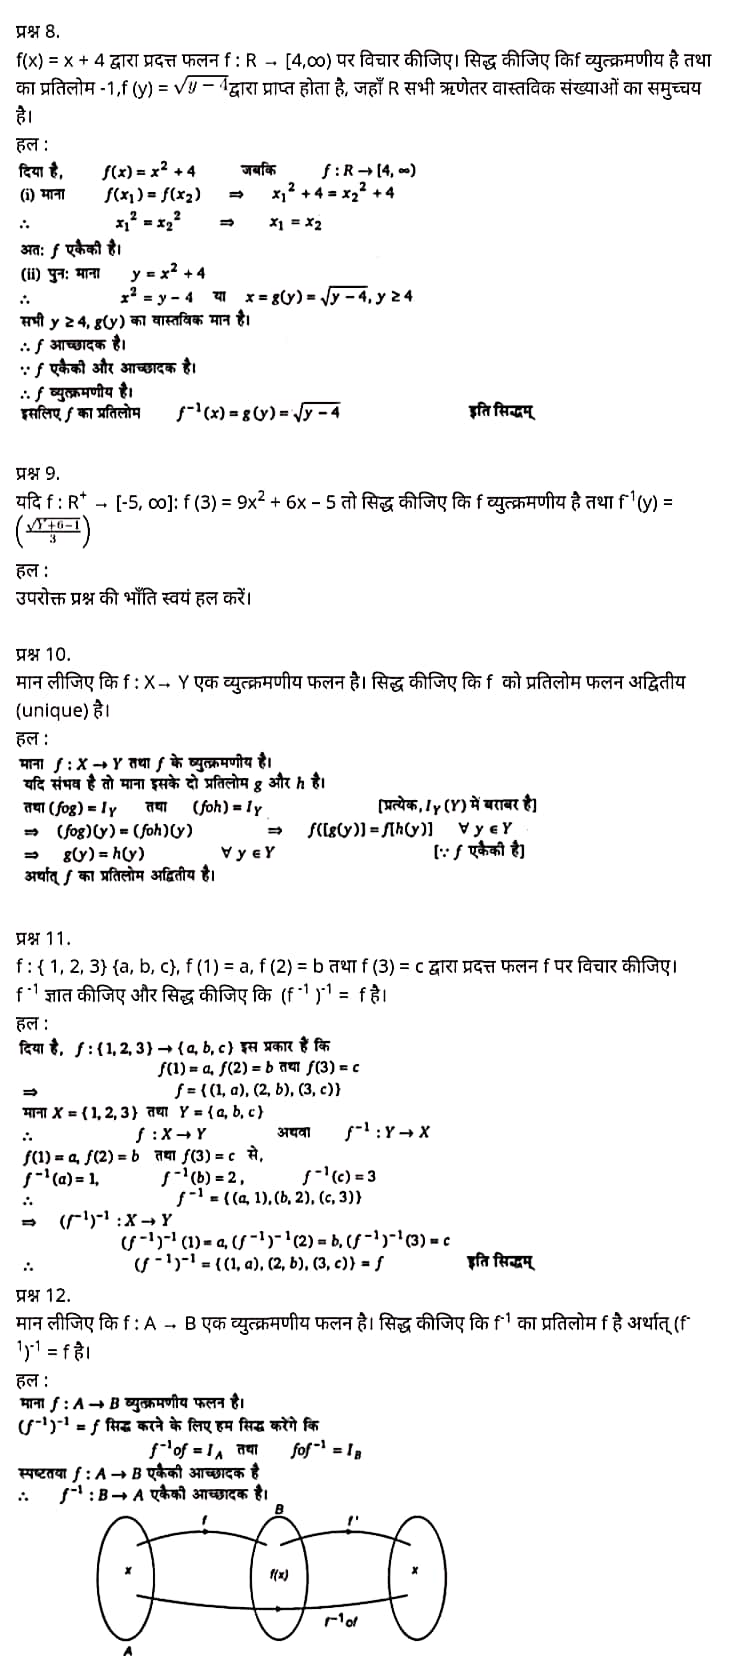 मैथ्स कक्षा 12 नोट्स pdf,  मैथ्स कक्षा 12 नोट्स 2020 NCERT,  मैथ्स कक्षा 12 PDF,  मैथ्स पुस्तक,  मैथ्स की बुक,  मैथ्स प्रश्नोत्तरी Class 12, 12 वीं मैथ्स पुस्तक RBSE,  बिहार बोर्ड 12 वीं मैथ्स नोट्स,   12th Maths book in hindi, 12th Maths notes in hindi, cbse books for class 12, cbse books in hindi, cbse ncert books, class 12 Maths notes in hindi,  class 12 hindi ncert solutions, Maths 2020, Maths 2021, Maths 2022, Maths book class 12, Maths book in hindi, Maths class 12 in hindi, Maths notes for class 12 up board in hindi, ncert all books, ncert app in hindi, ncert book solution, ncert books class 10, ncert books class 12, ncert books for class 7, ncert books for upsc in hindi, ncert books in hindi class 10, ncert books in hindi for class 12 Maths, ncert books in hindi for class 6, ncert books in hindi pdf, ncert class 12 hindi book, ncert english book, ncert Maths book in hindi, ncert Maths books in hindi pdf, ncert Maths class 12, ncert in hindi,  old ncert books in hindi, online ncert books in hindi,  up board 12th, up board 12th syllabus, up board class 10 hindi book, up board class 12 books, up board class 12 new syllabus, up Board Maths 2020, up Board Maths 2021, up Board Maths 2022, up Board Maths 2023, up board intermediate Maths syllabus, up board intermediate syllabus 2021, Up board Master 2021, up board model paper 2021, up board model paper all subject, up board new syllabus of class 12th Maths, up board paper 2021, Up board syllabus 2021, UP board syllabus 2022,  12 veen maiths buk hindee mein, 12 veen maiths nots hindee mein, seebeeesasee kitaaben 12 ke lie, seebeeesasee kitaaben hindee mein, seebeeesasee enaseeaaratee kitaaben, klaas 12 maiths nots in hindee, klaas 12 hindee enaseeteeaar solyooshans, maiths 2020, maiths 2021, maiths 2022, maiths buk klaas 12, maiths buk in hindee, maiths klaas 12 hindee mein, maiths nots phor klaas 12 ap bord in hindee, nchairt all books, nchairt app in hindi, nchairt book solution, nchairt books klaas 10, nchairt books klaas 12, nchairt books kaksha 7 ke lie, nchairt books for hindi mein hindee mein, nchairt books in hindi kaksha 10, nchairt books in hindi ke lie kaksha 12 ganit, nchairt kitaaben hindee mein kaksha 6 ke lie, nchairt pustaken hindee mein, nchairt books 12 hindee pustak, nchairt angrejee pustak mein , nchairt maths book in hindi, nchairt maths books in hindi pdf, nchairt maths chlass 12, nchairt in hindi, puraanee nchairt books in hindi, onalain nchairt books in hindi, bord 12 veen, up bord 12 veen ka silebas, up bord klaas 10 hindee kee pustak , bord kee kaksha 12 kee kitaaben, bord kee kaksha 12 kee naee paathyakram, bord kee ganit 2020, bord kee ganit 2021, ganit kee padhaee s 2022, up bord maiths 2023, up bord intarameediet maiths silebas, up bord intarameediet silebas 2021, up bord maastar 2021, up bord modal pepar 2021, up bord modal pepar sabhee vishay, up bord nyoo klaasiks oph klaas 12 veen maiths, up bord pepar 2021, up bord paathyakram 2021, yoopee bord paathyakram 2022,  12 वीं मैथ्स पुस्तक हिंदी में, 12 वीं मैथ्स नोट्स हिंदी में, कक्षा 12 के लिए सीबीएससी पुस्तकें, हिंदी में सीबीएससी पुस्तकें, सीबीएससी  पुस्तकें, कक्षा 12 मैथ्स नोट्स हिंदी में, कक्षा 12 हिंदी एनसीईआरटी समाधान, मैथ्स 2020, मैथ्स 2021, मैथ्स 2022, मैथ्स  बुक क्लास 12, मैथ्स बुक इन हिंदी, बायोलॉजी क्लास 12 हिंदी में, मैथ्स नोट्स इन क्लास 12 यूपी  बोर्ड इन हिंदी, एनसीईआरटी मैथ्स की किताब हिंदी में,  बोर्ड 12 वीं तक, 12 वीं तक की पाठ्यक्रम, बोर्ड कक्षा 10 की हिंदी पुस्तक  , बोर्ड की कक्षा 12 की किताबें, बोर्ड की कक्षा 12 की नई पाठ्यक्रम, बोर्ड मैथ्स 2020, यूपी   बोर्ड मैथ्स 2021, यूपी  बोर्ड मैथ्स 2022, यूपी  बोर्ड मैथ्स 2023, यूपी  बोर्ड इंटरमीडिएट बायोलॉजी सिलेबस, यूपी  बोर्ड इंटरमीडिएट सिलेबस 2021, यूपी  बोर्ड मास्टर 2021, यूपी  बोर्ड मॉडल पेपर 2021, यूपी  मॉडल पेपर सभी विषय, यूपी  बोर्ड न्यू क्लास का सिलेबस  12 वीं मैथ्स, अप बोर्ड पेपर 2021, यूपी बोर्ड सिलेबस 2021, यूपी बोर्ड सिलेबस 2022,